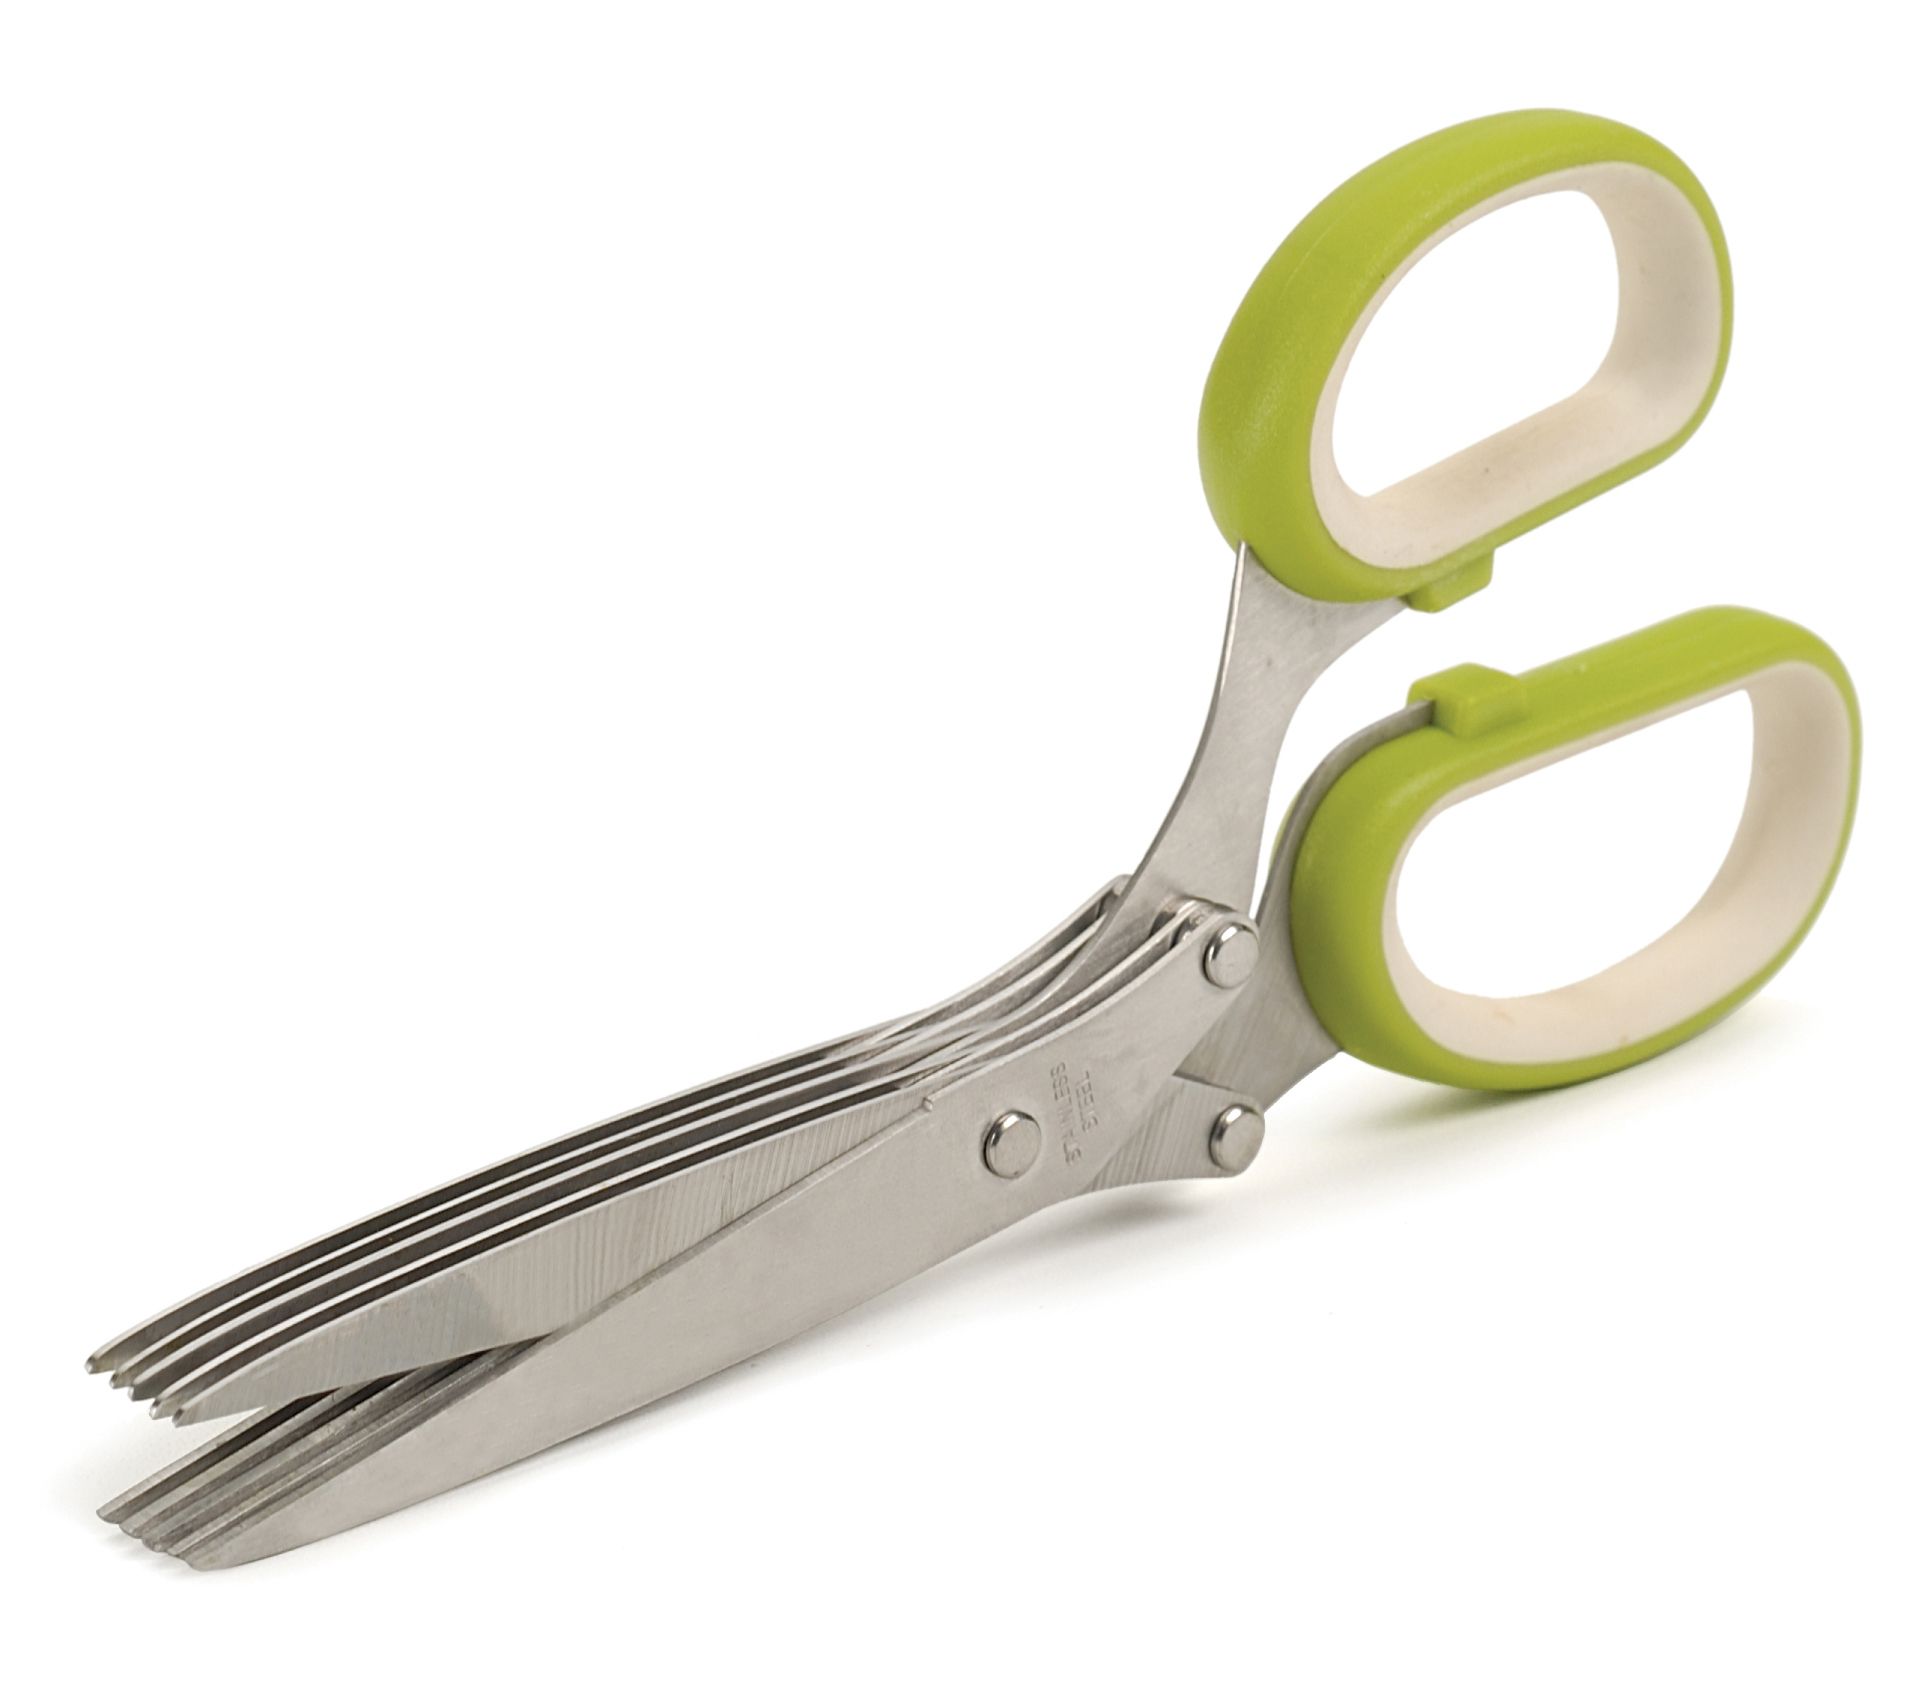 Kitchen Scissors, Herb Scissors, Multi-purpose Scissors